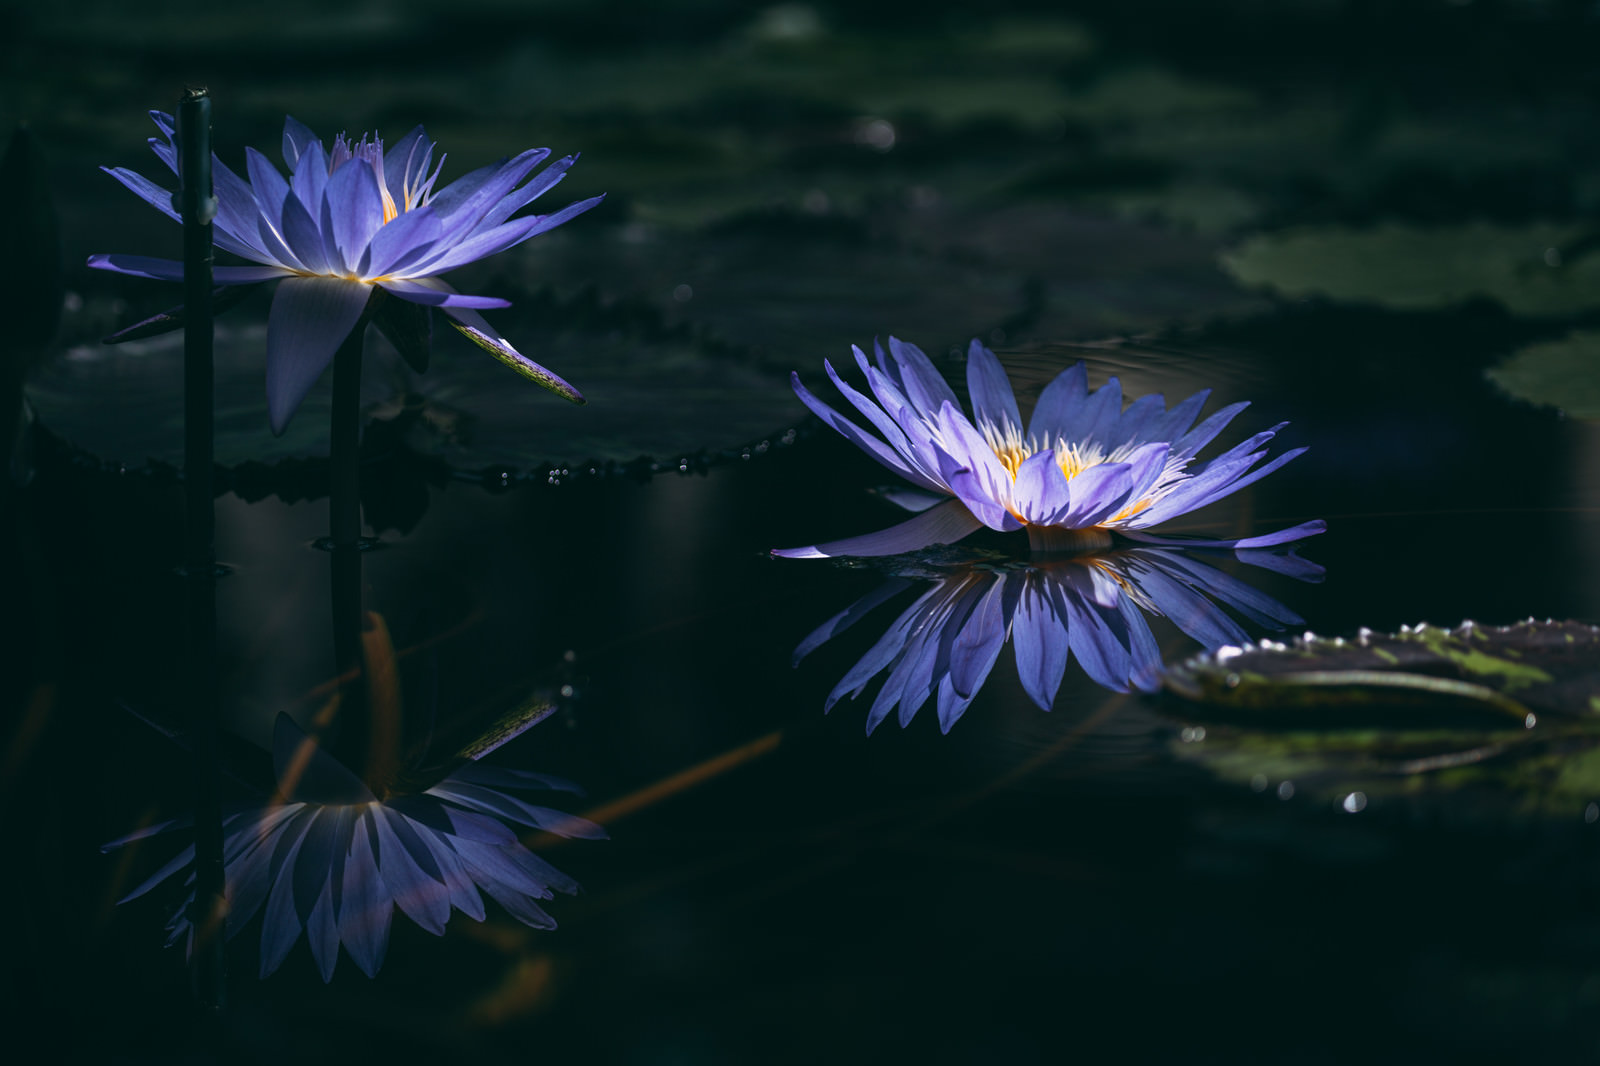 「水面に映る二つ並んだ紫色の睡蓮」の写真